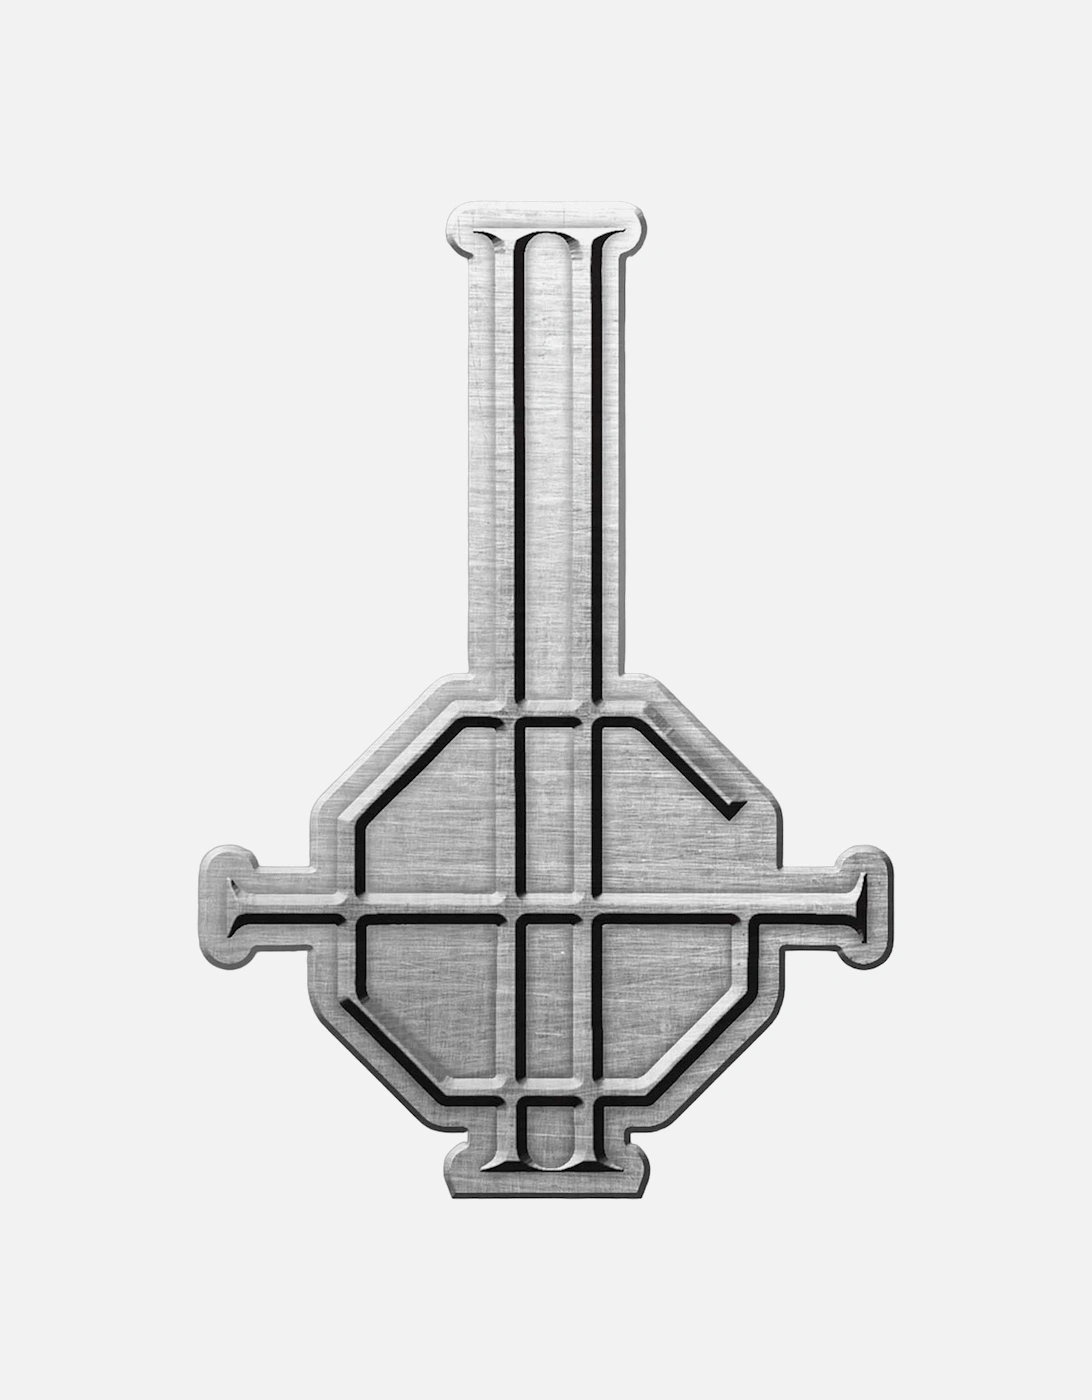 Grucifix Metal Badge, 2 of 1